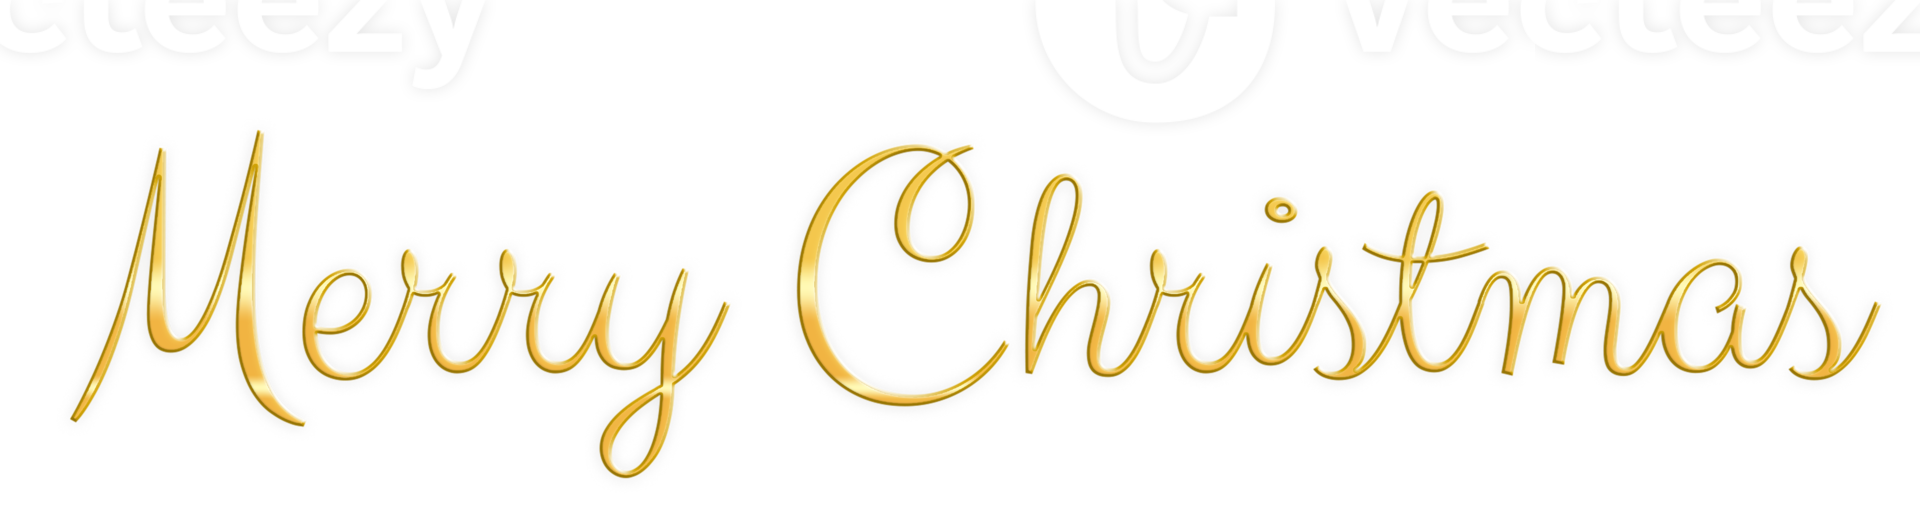 goldener text frohe weihnachten ausgeschnitten png